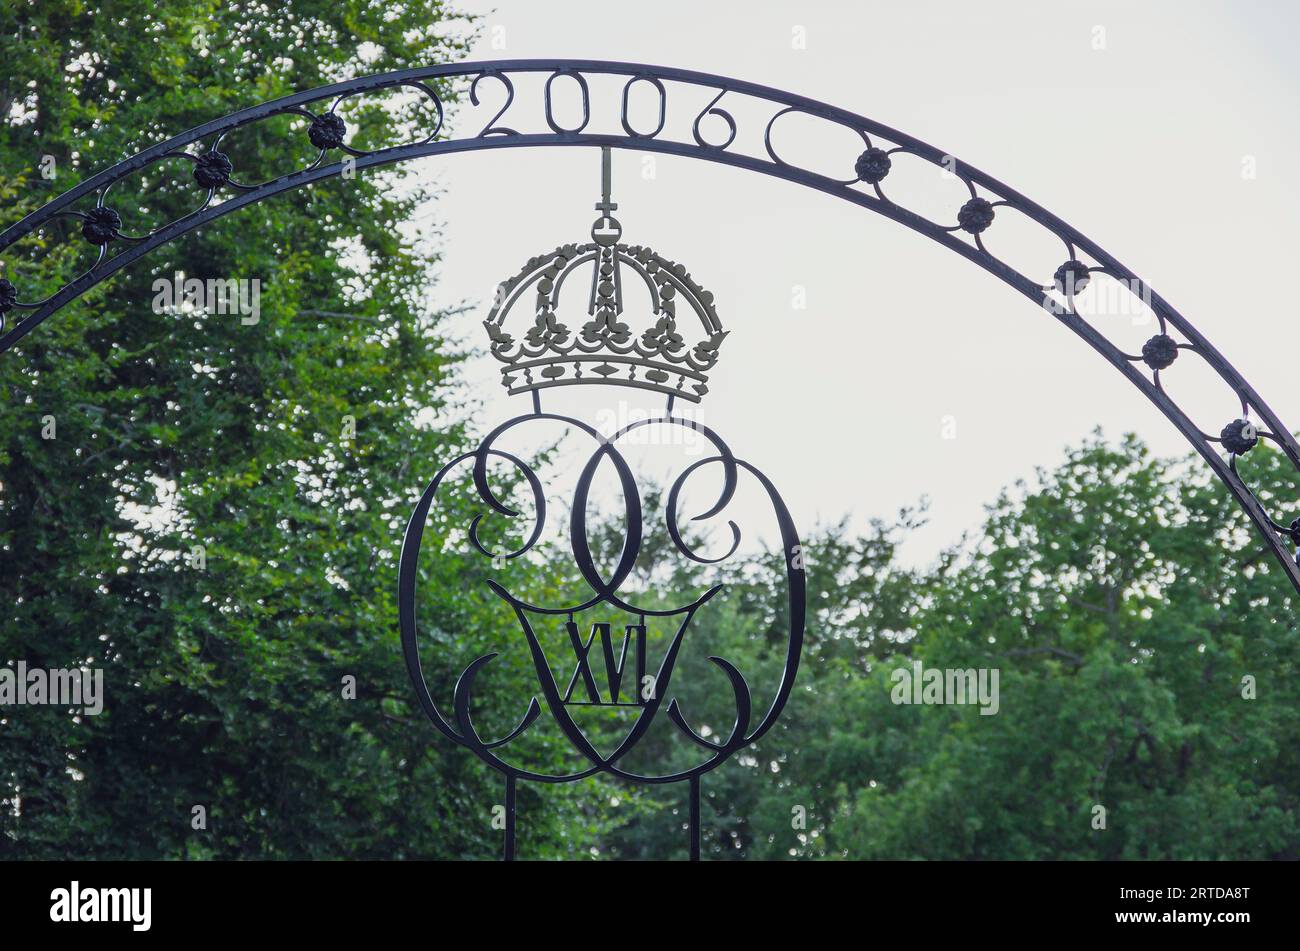 Königliche Krone über dem Eingangstor des Sollidenpalastes, der Sommerresidenz der schwedischen Königsfamilie Borgholm, Insel Öland, Schweden. Stockfoto